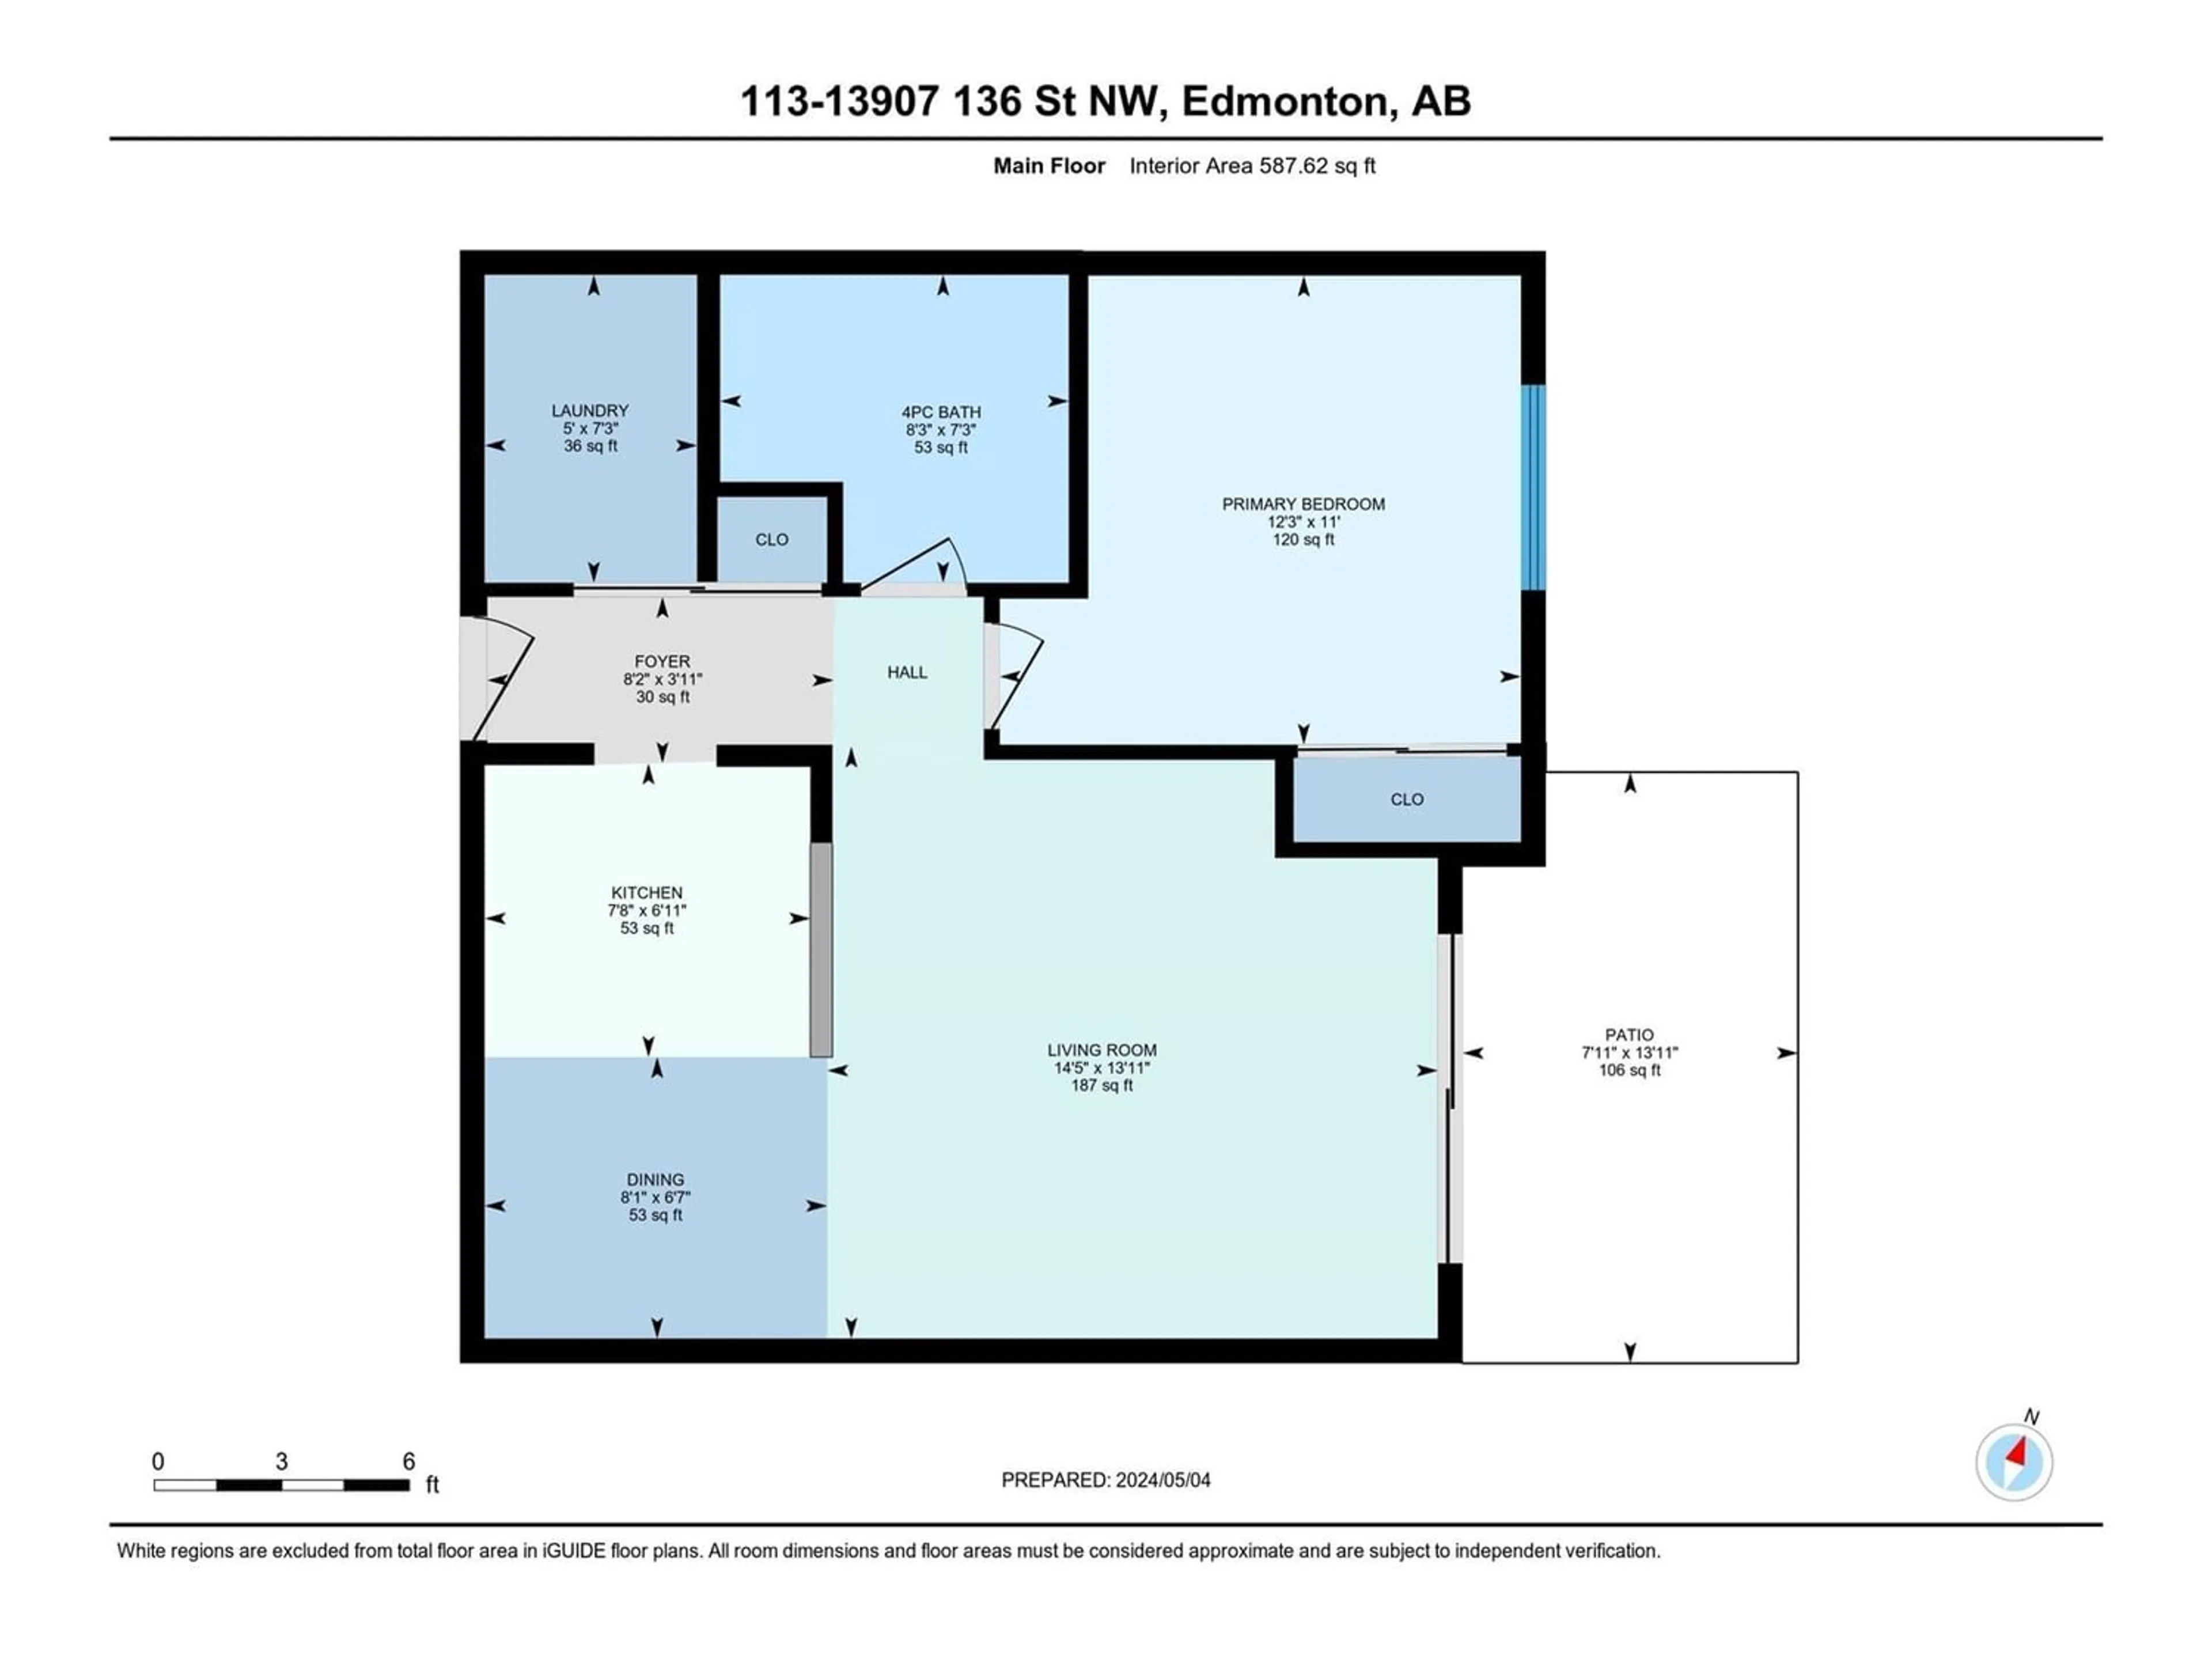 Floor plan for #113 13907 136 NW, Edmonton Alberta T6V1Y5